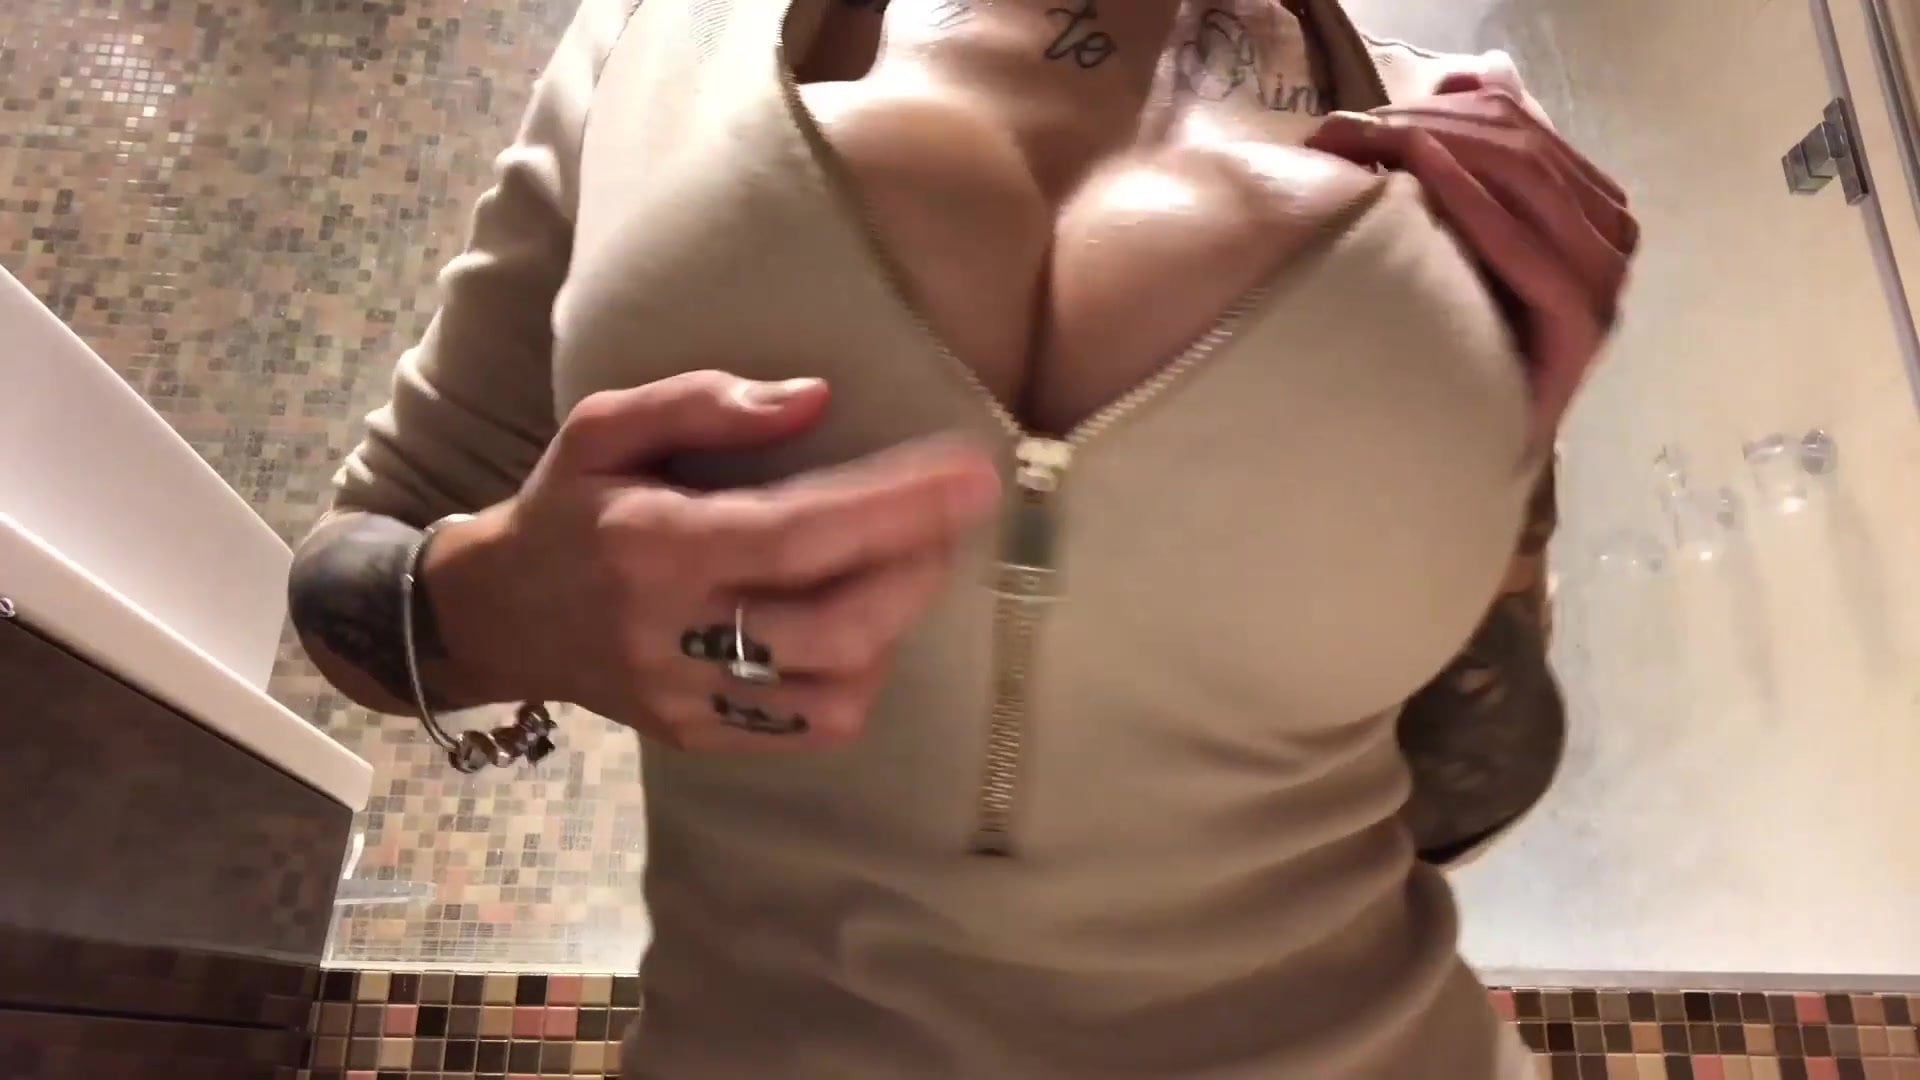 Pretty huge boob girl tease